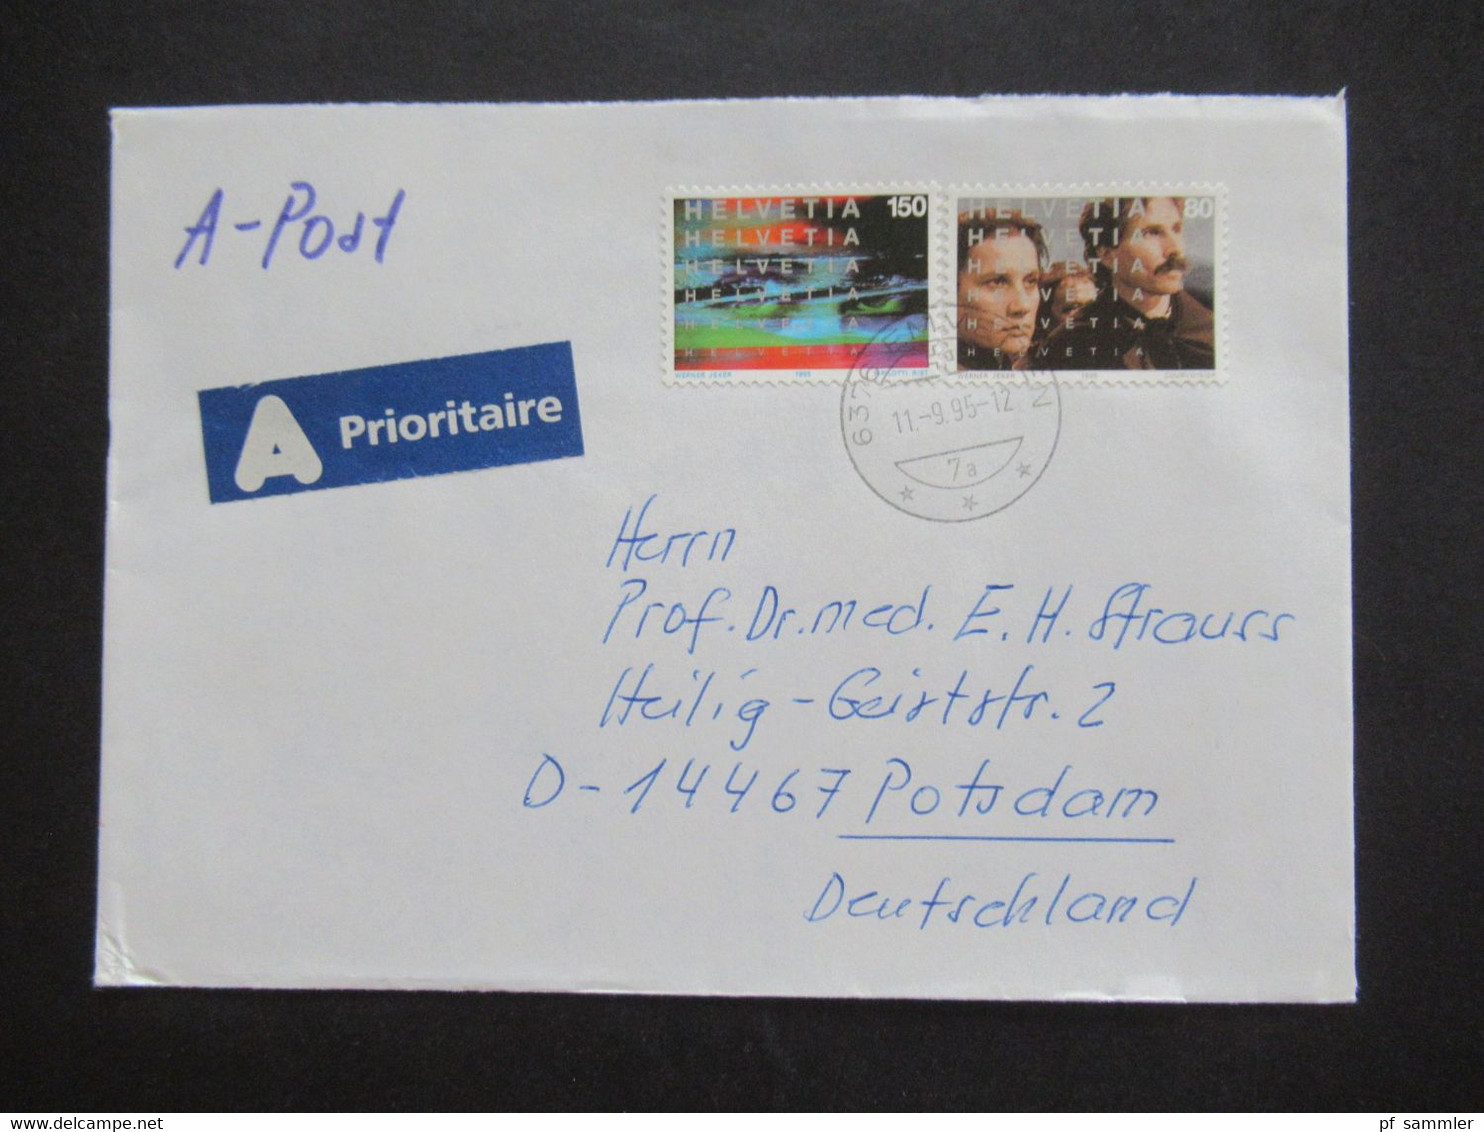 Schweiz 1990er Jahre Auslandsbriefe / A-Post auch Pro Juventute insgesamt 35 Belege / Stöberposten